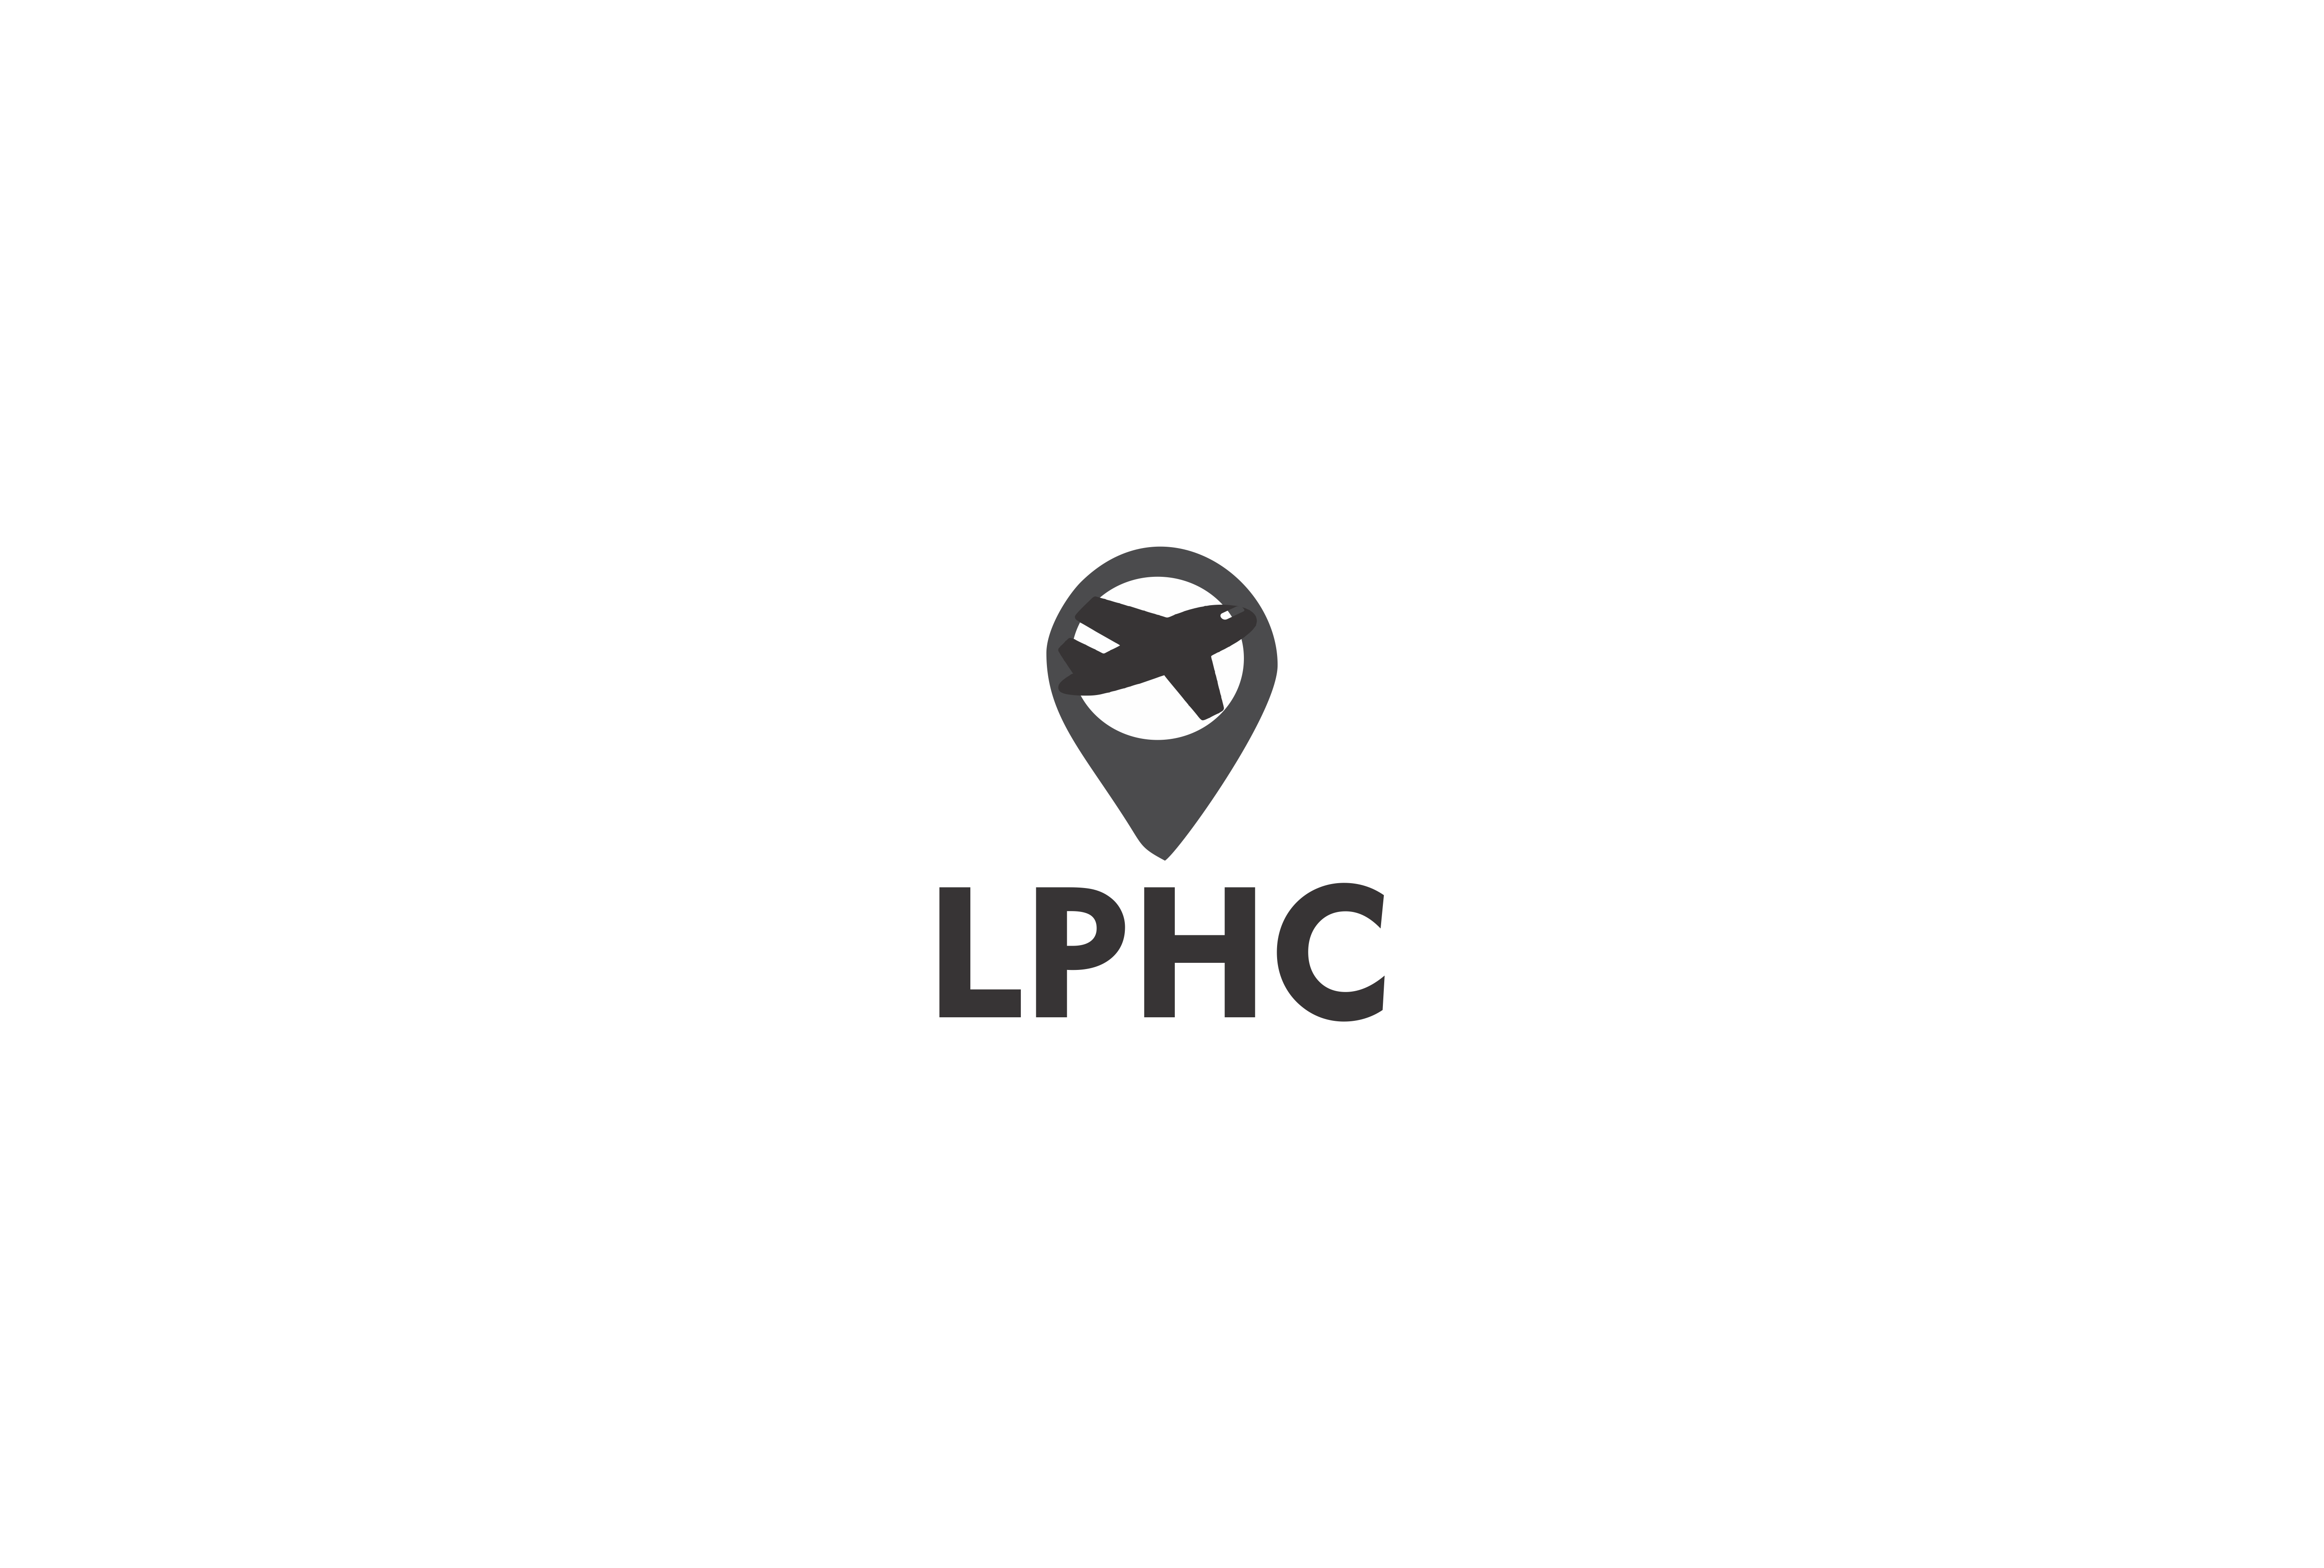 LPHC Final